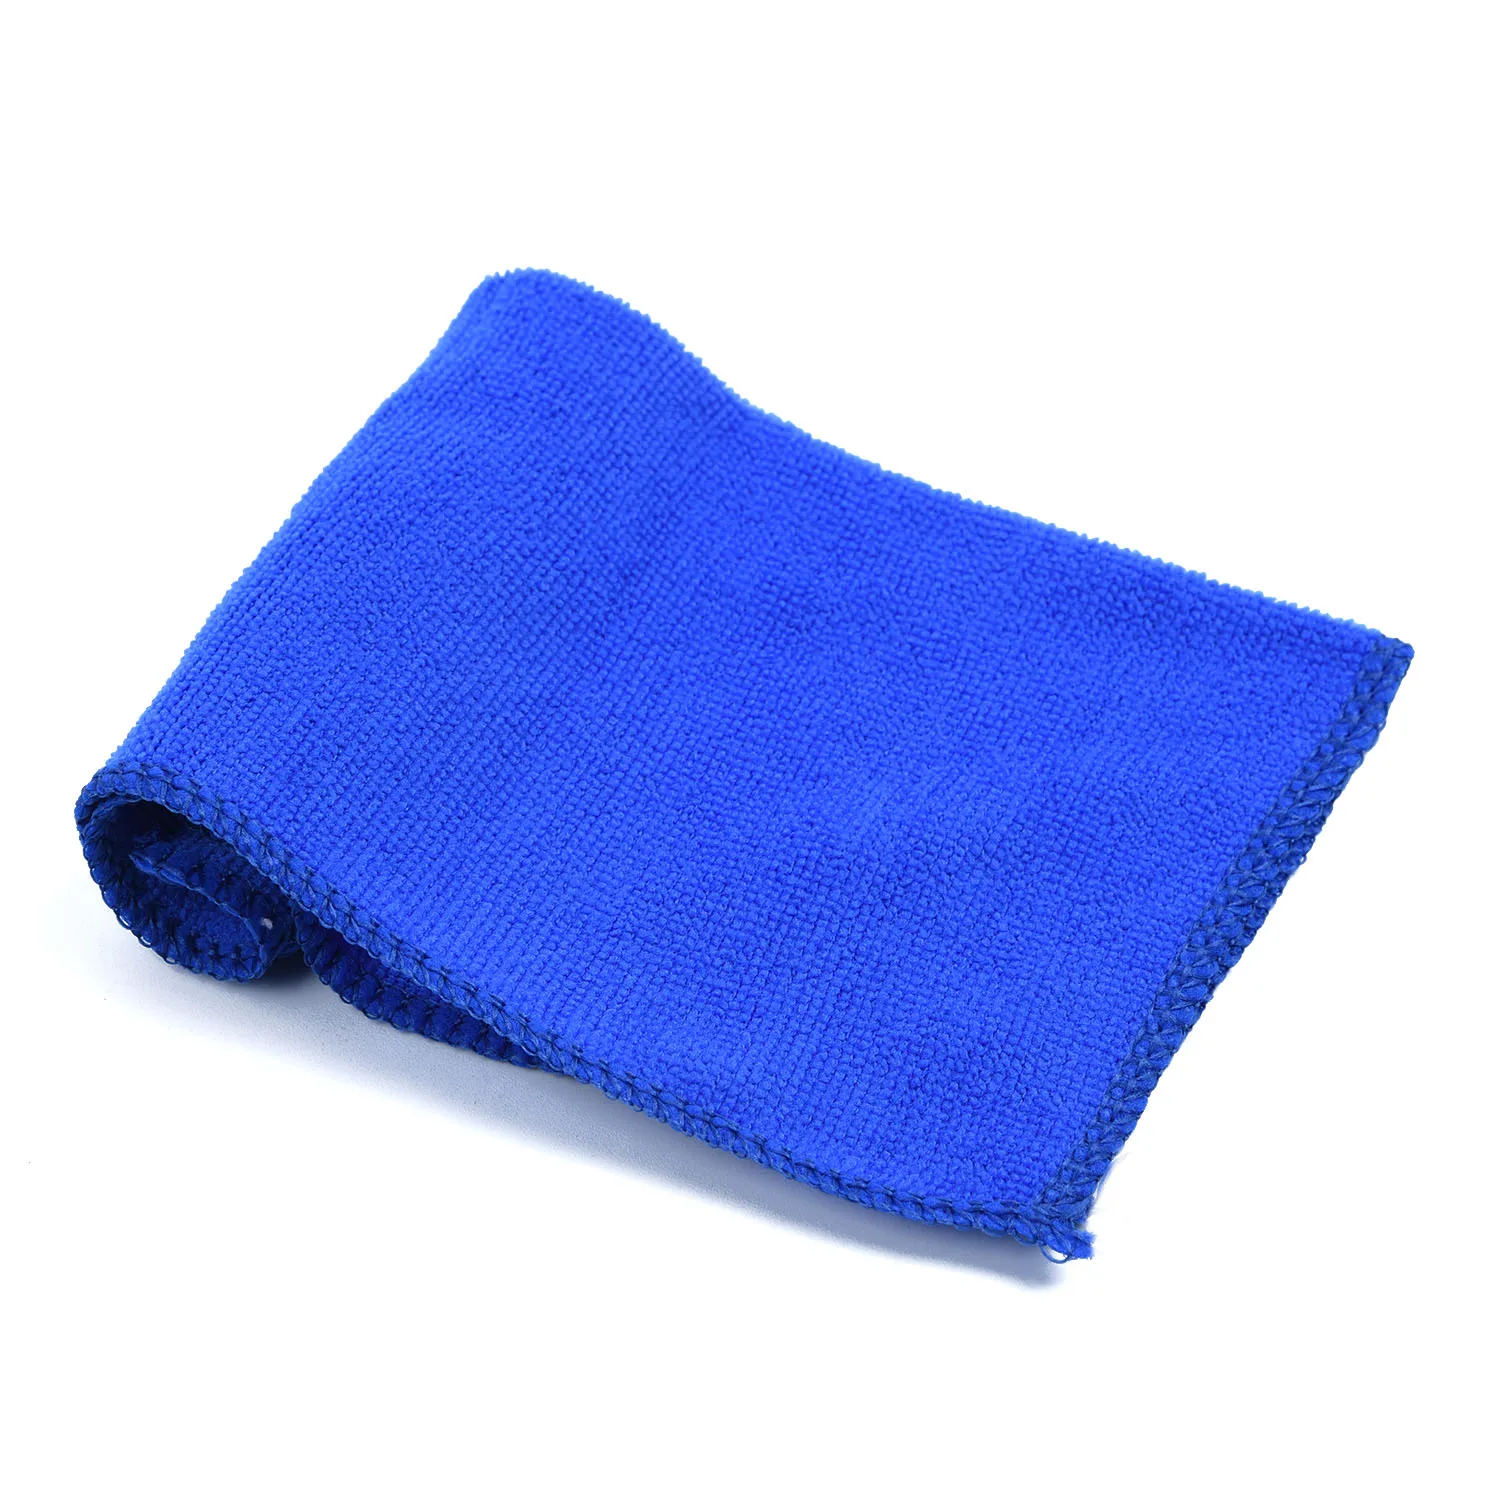 50 X голубое мягкое полотенце из микрофибры для мытья автомобиля, полотенце для мытья автомобиля, новое